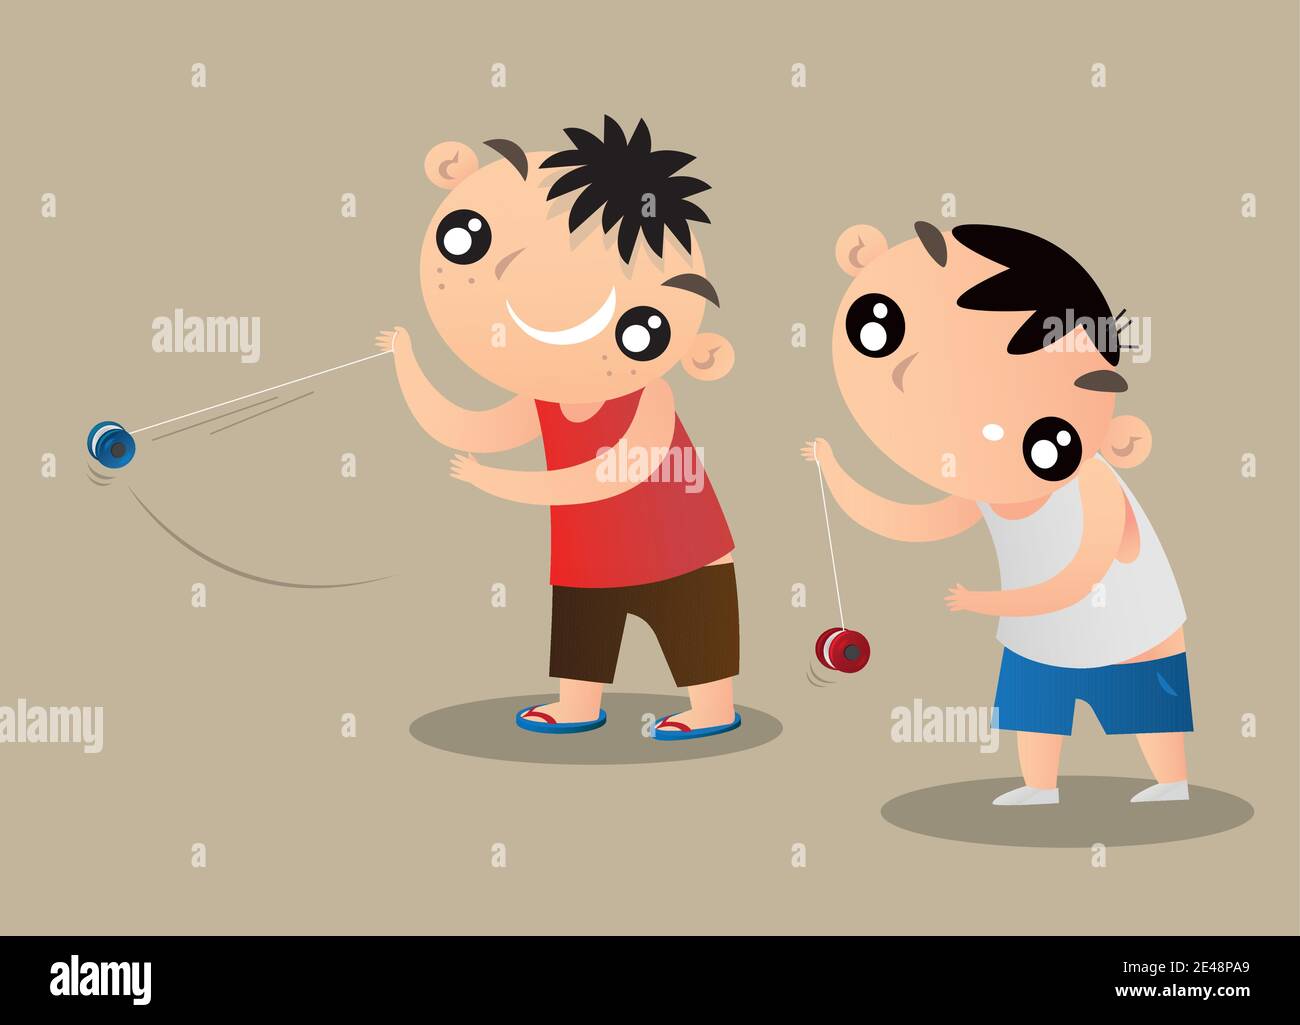 Illustrazione cartoon di due bambini di Hong Kong che giocano con yoyo  Immagine e Vettoriale - Alamy